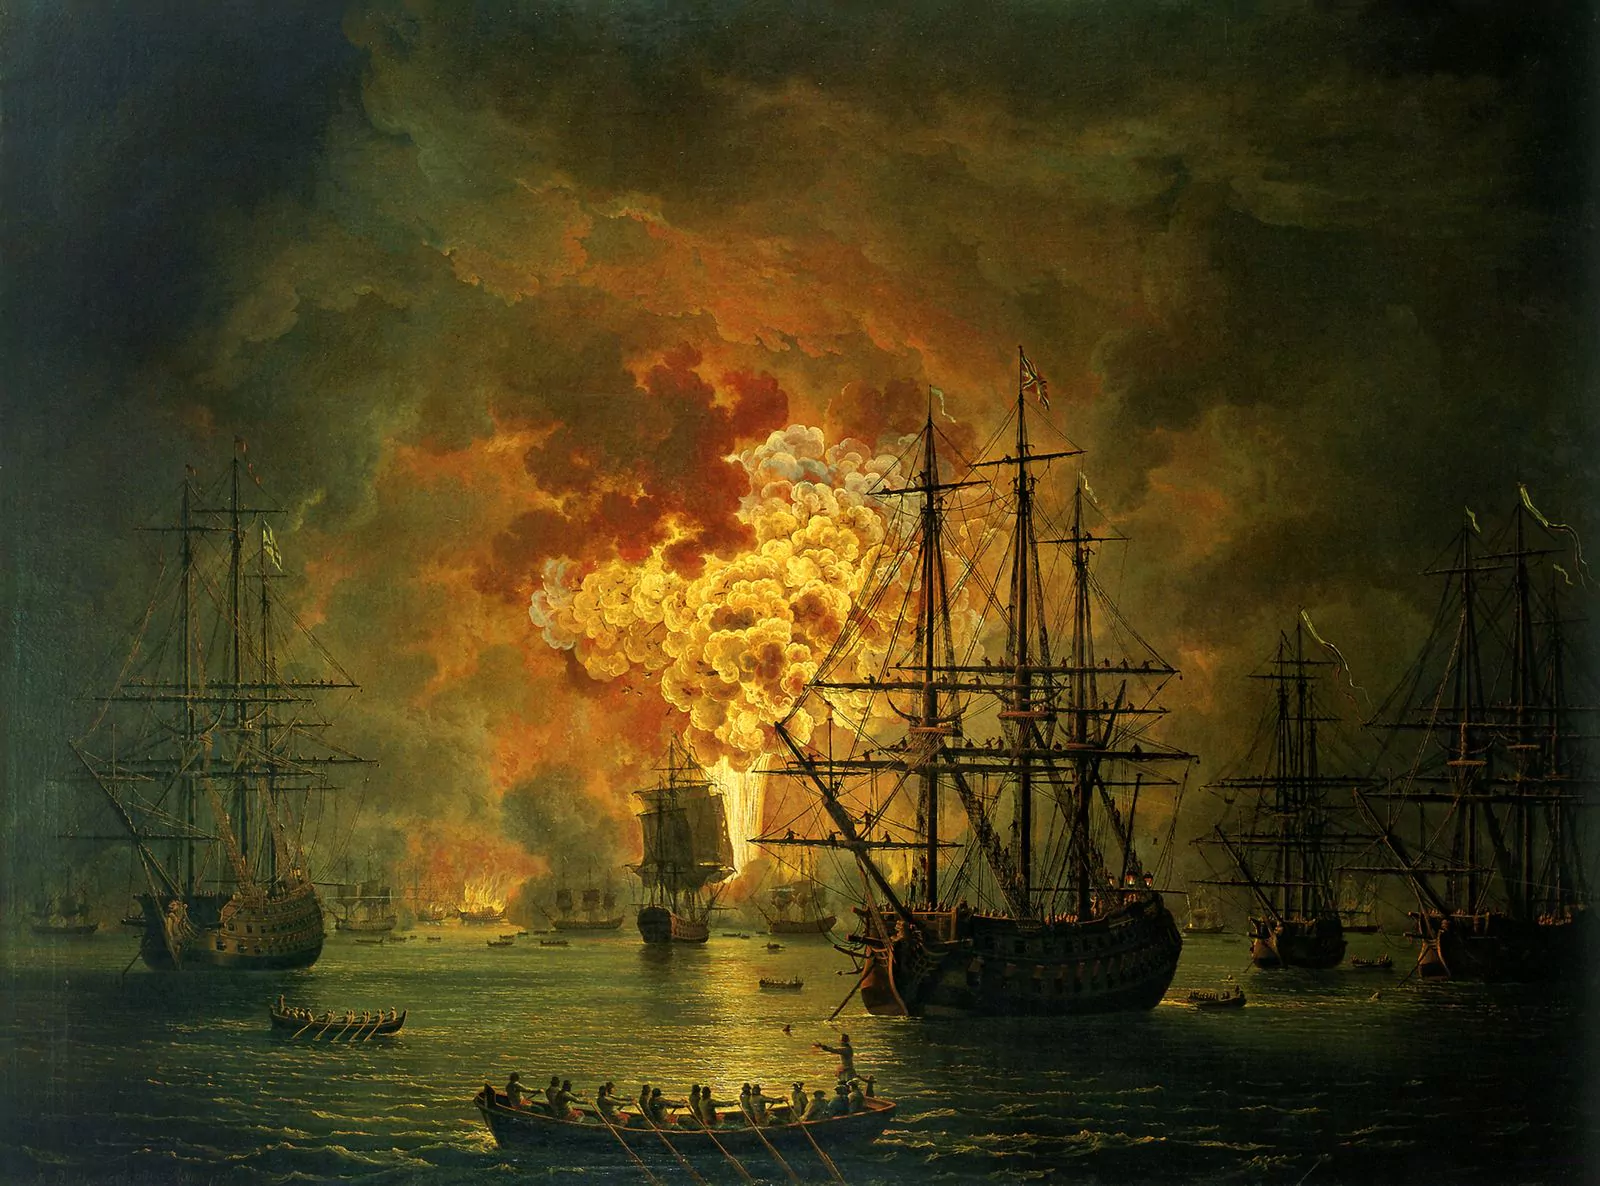 Якоб Филипп Хаккерт. Гибель турецкого флота в Чесменском бою, 1771 г.